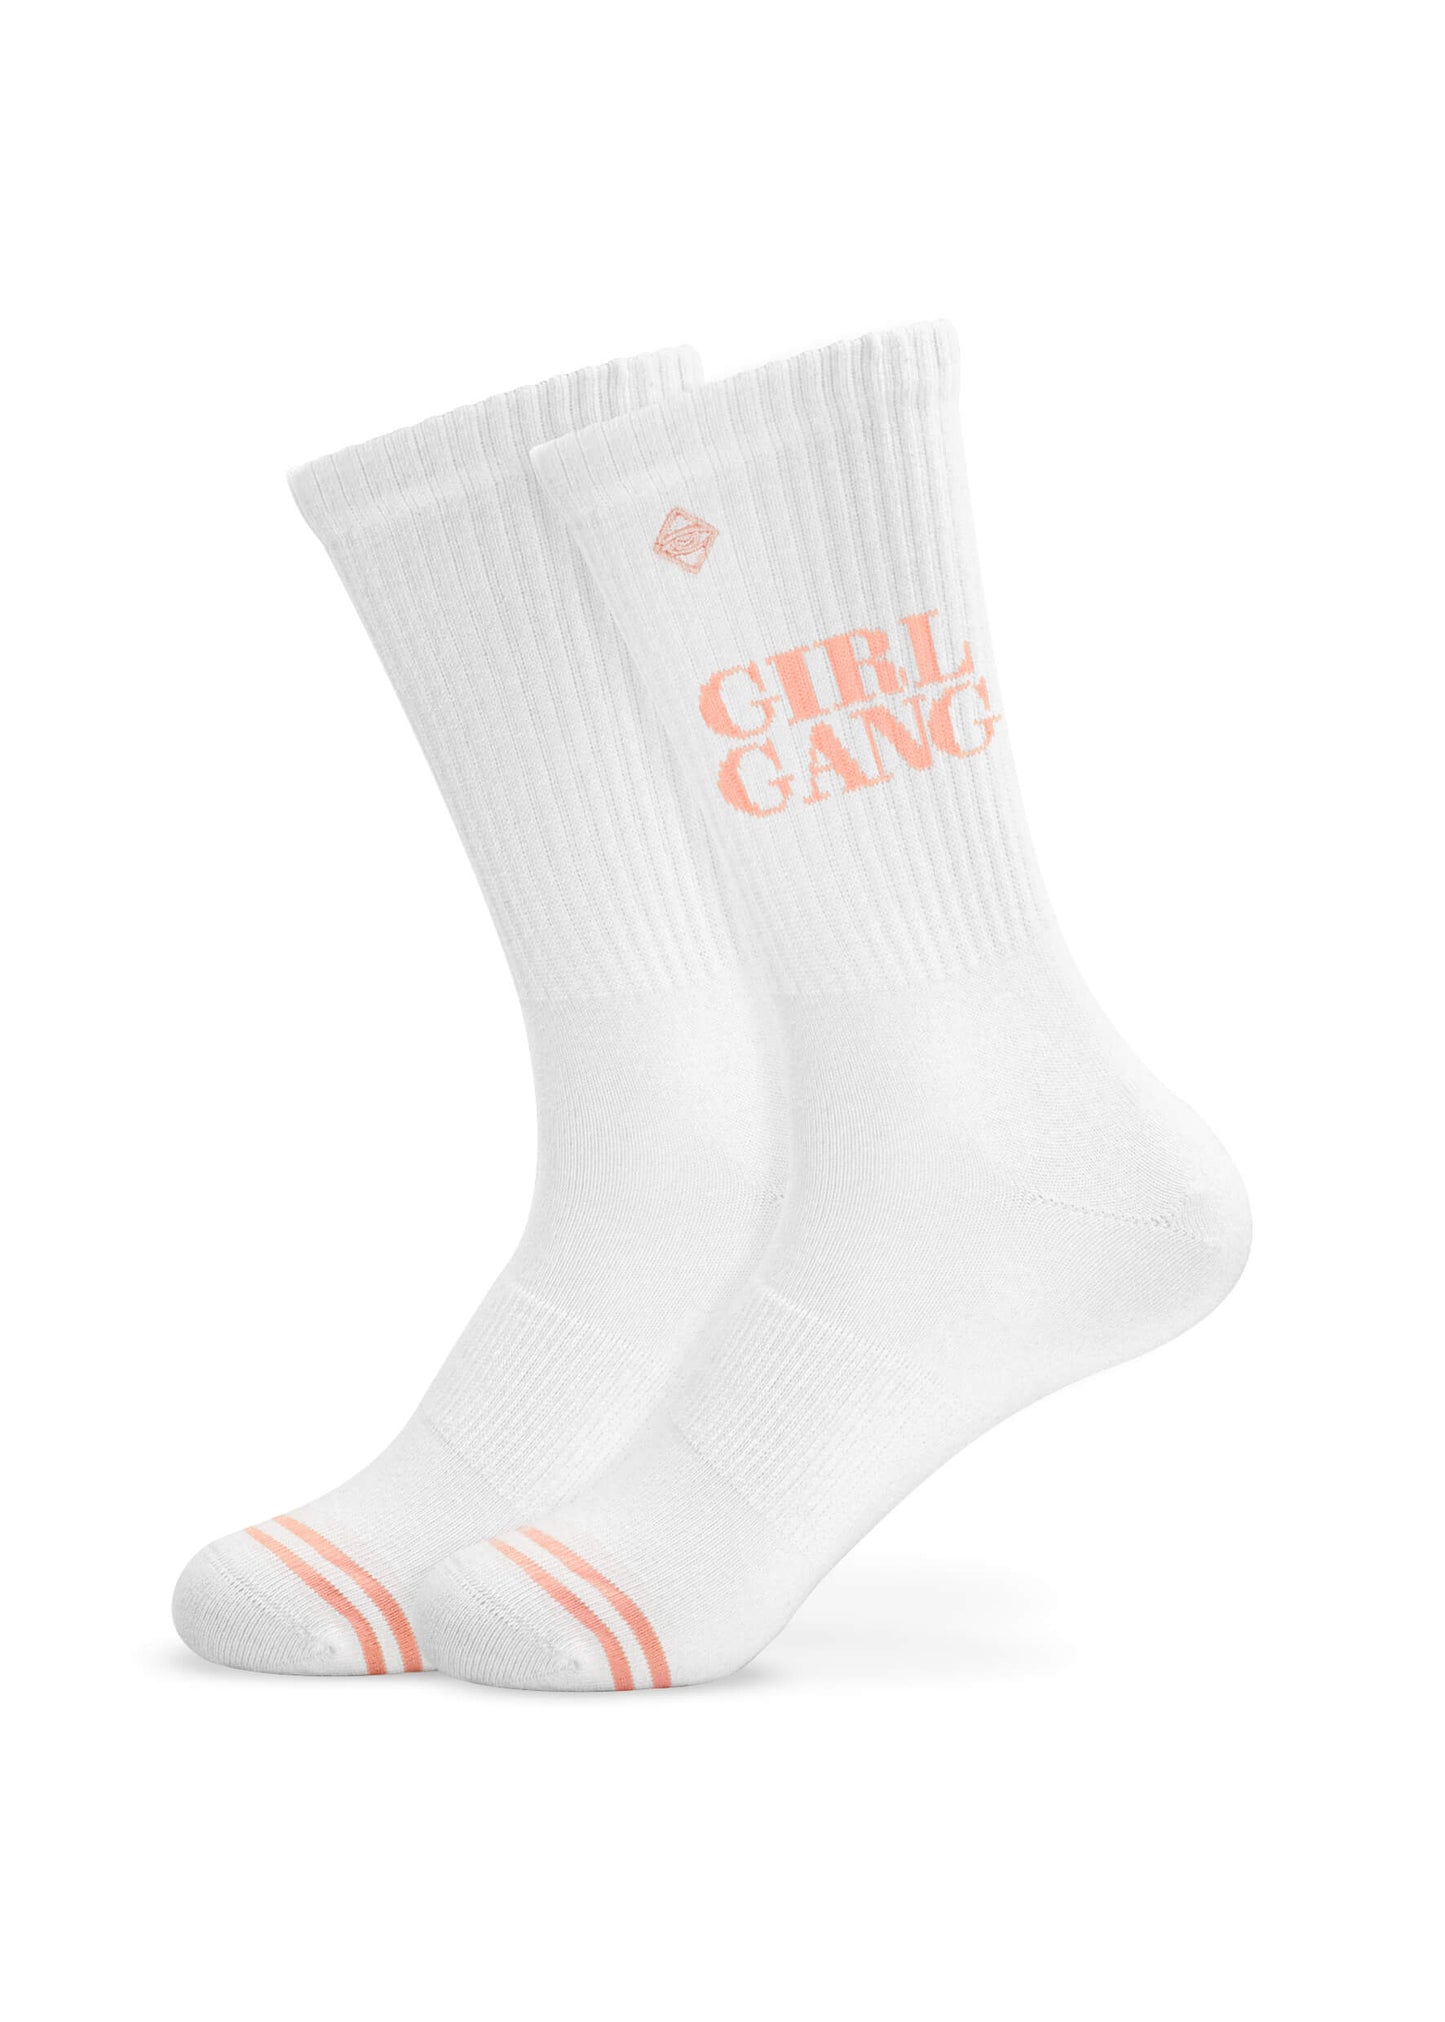 Girl Gang - tennis socks